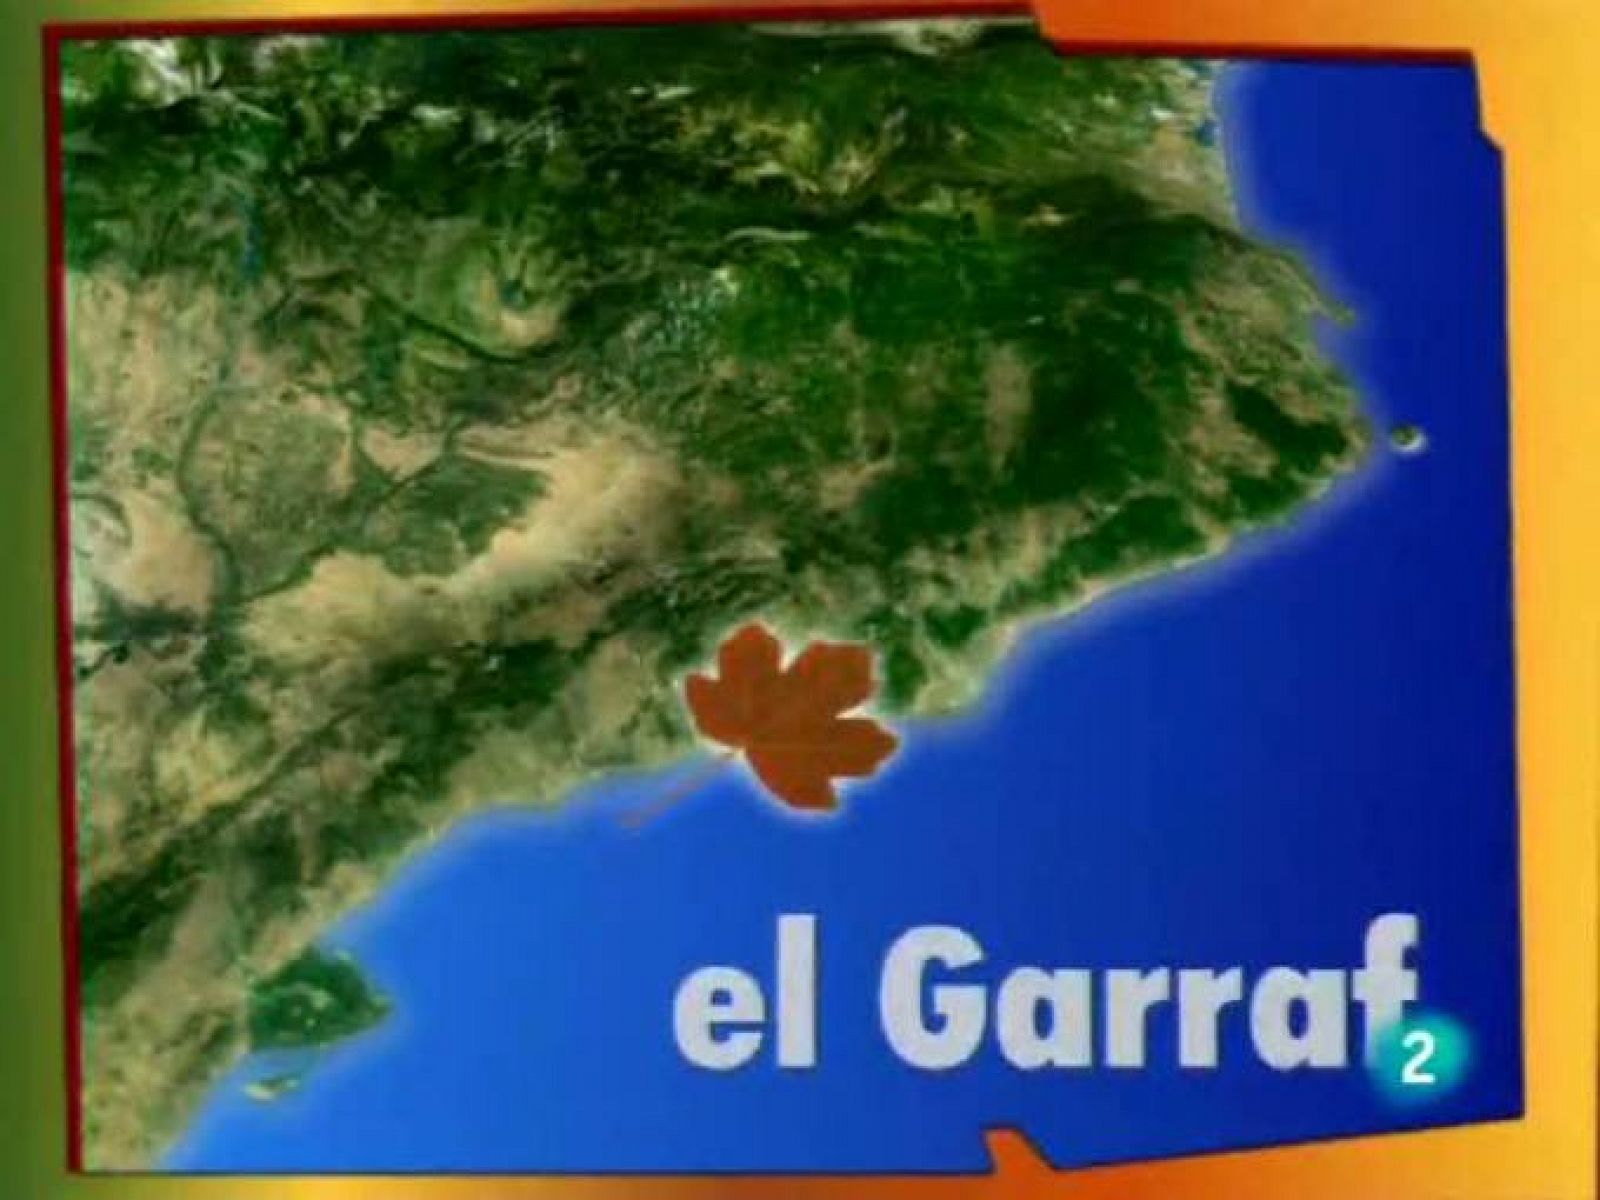 Racons de verd - El Garraf